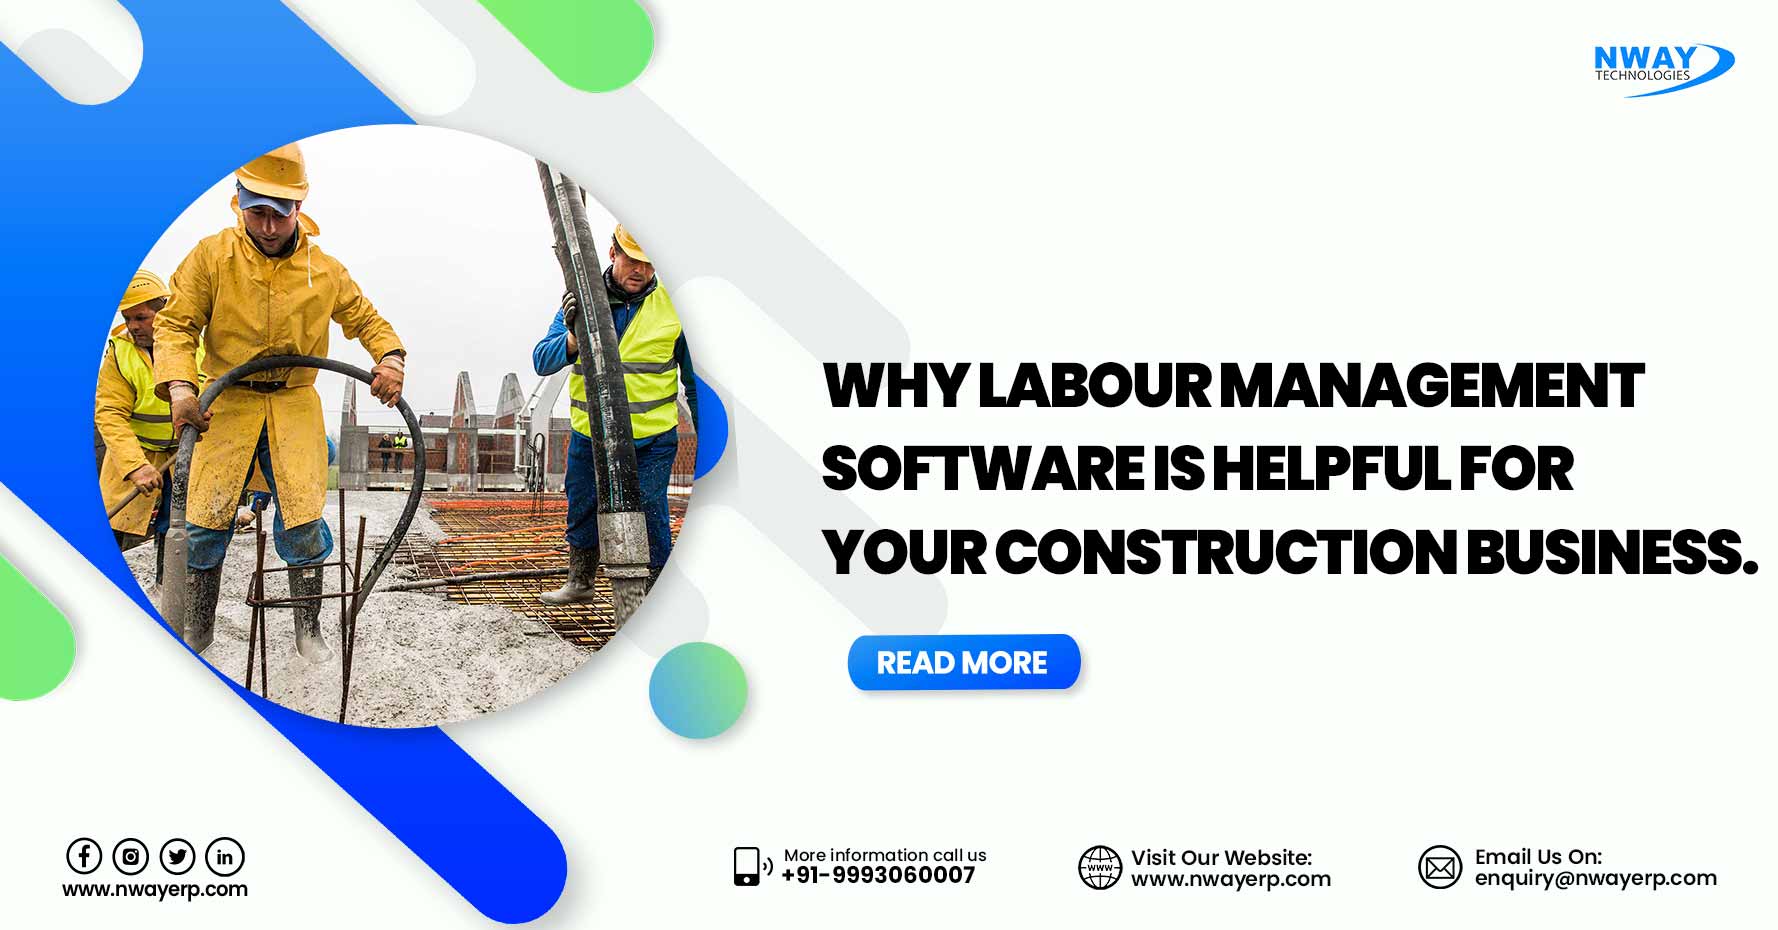 Labour management software